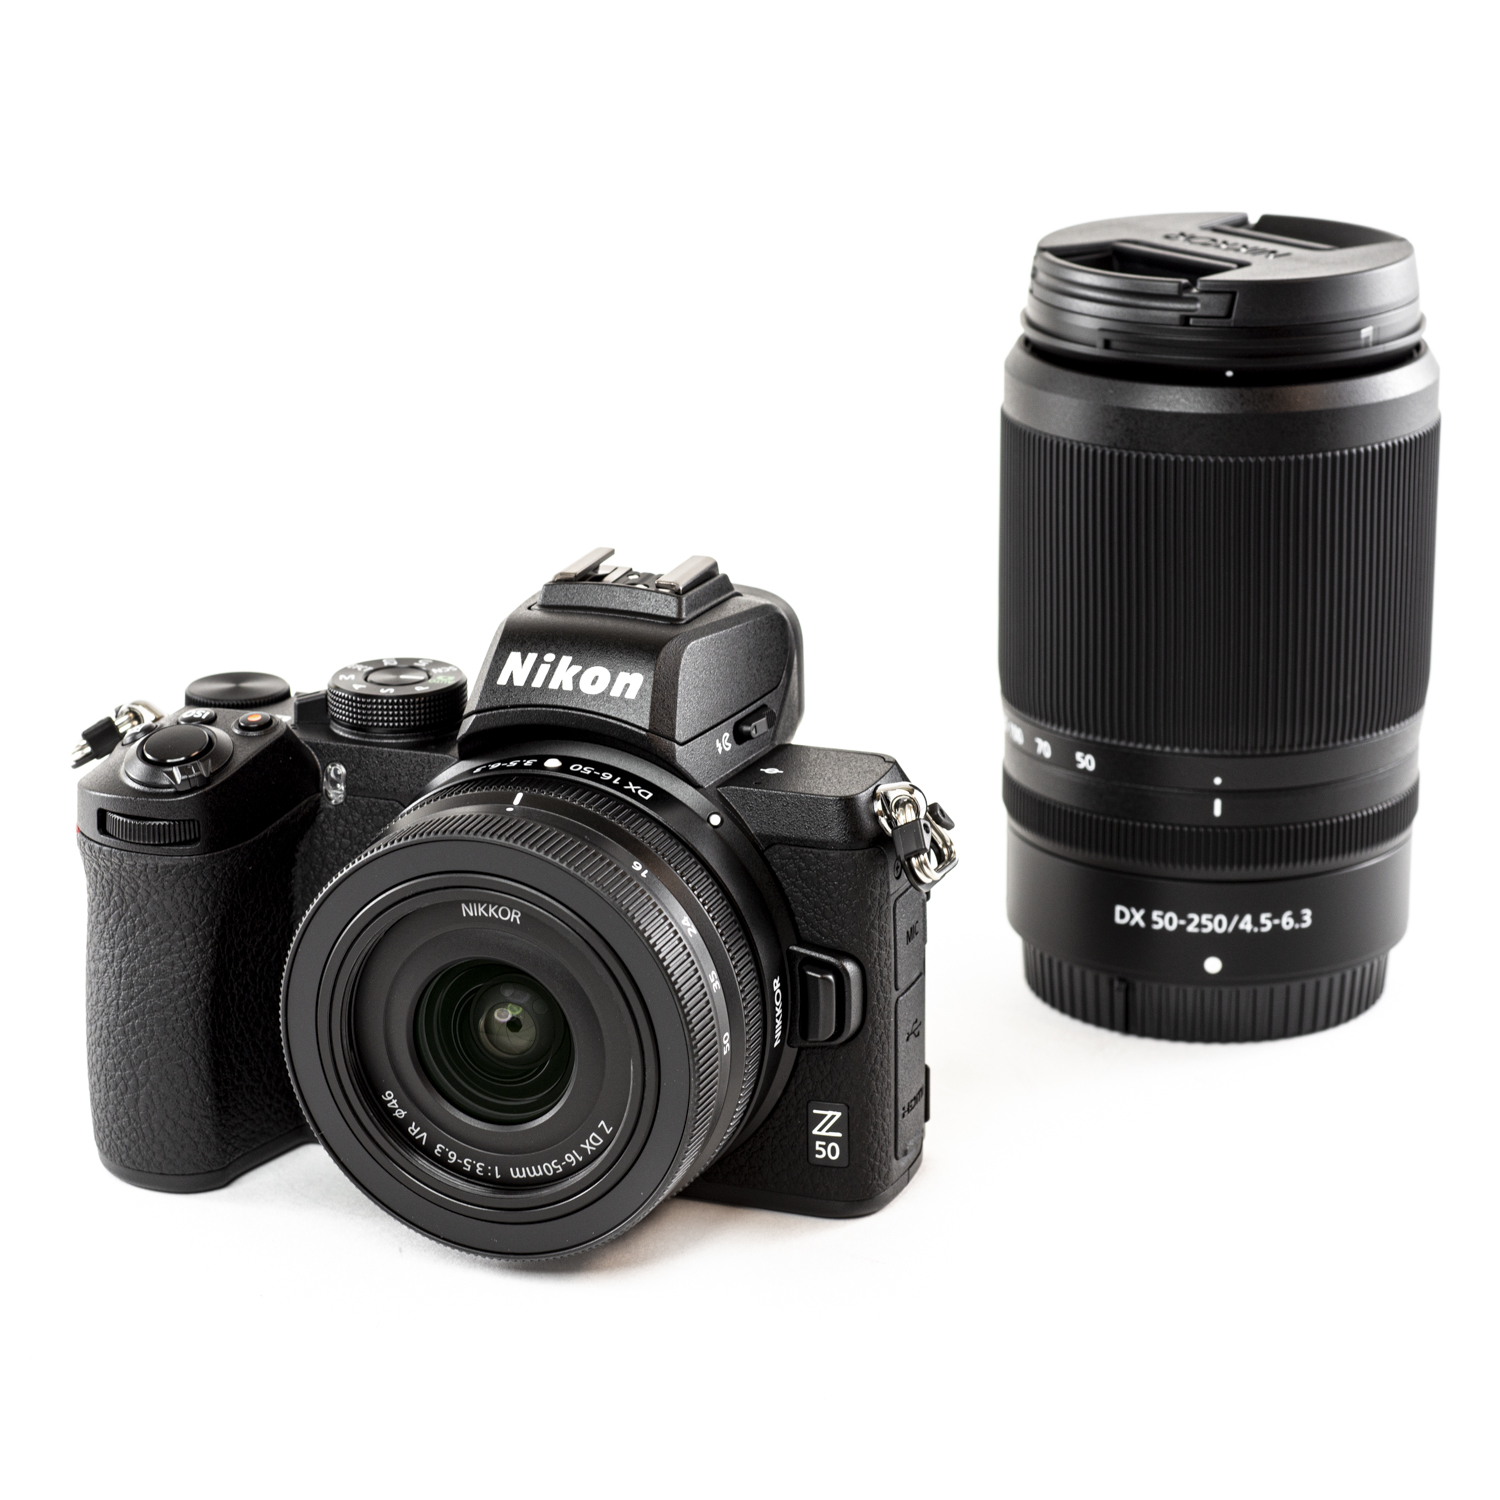 TVignette pour Nikon Z50 + Z DX 16-50mm f/3.5-6.3 VR et NIKKOR Z DX 50-250mm f/4.5-6.3 VR